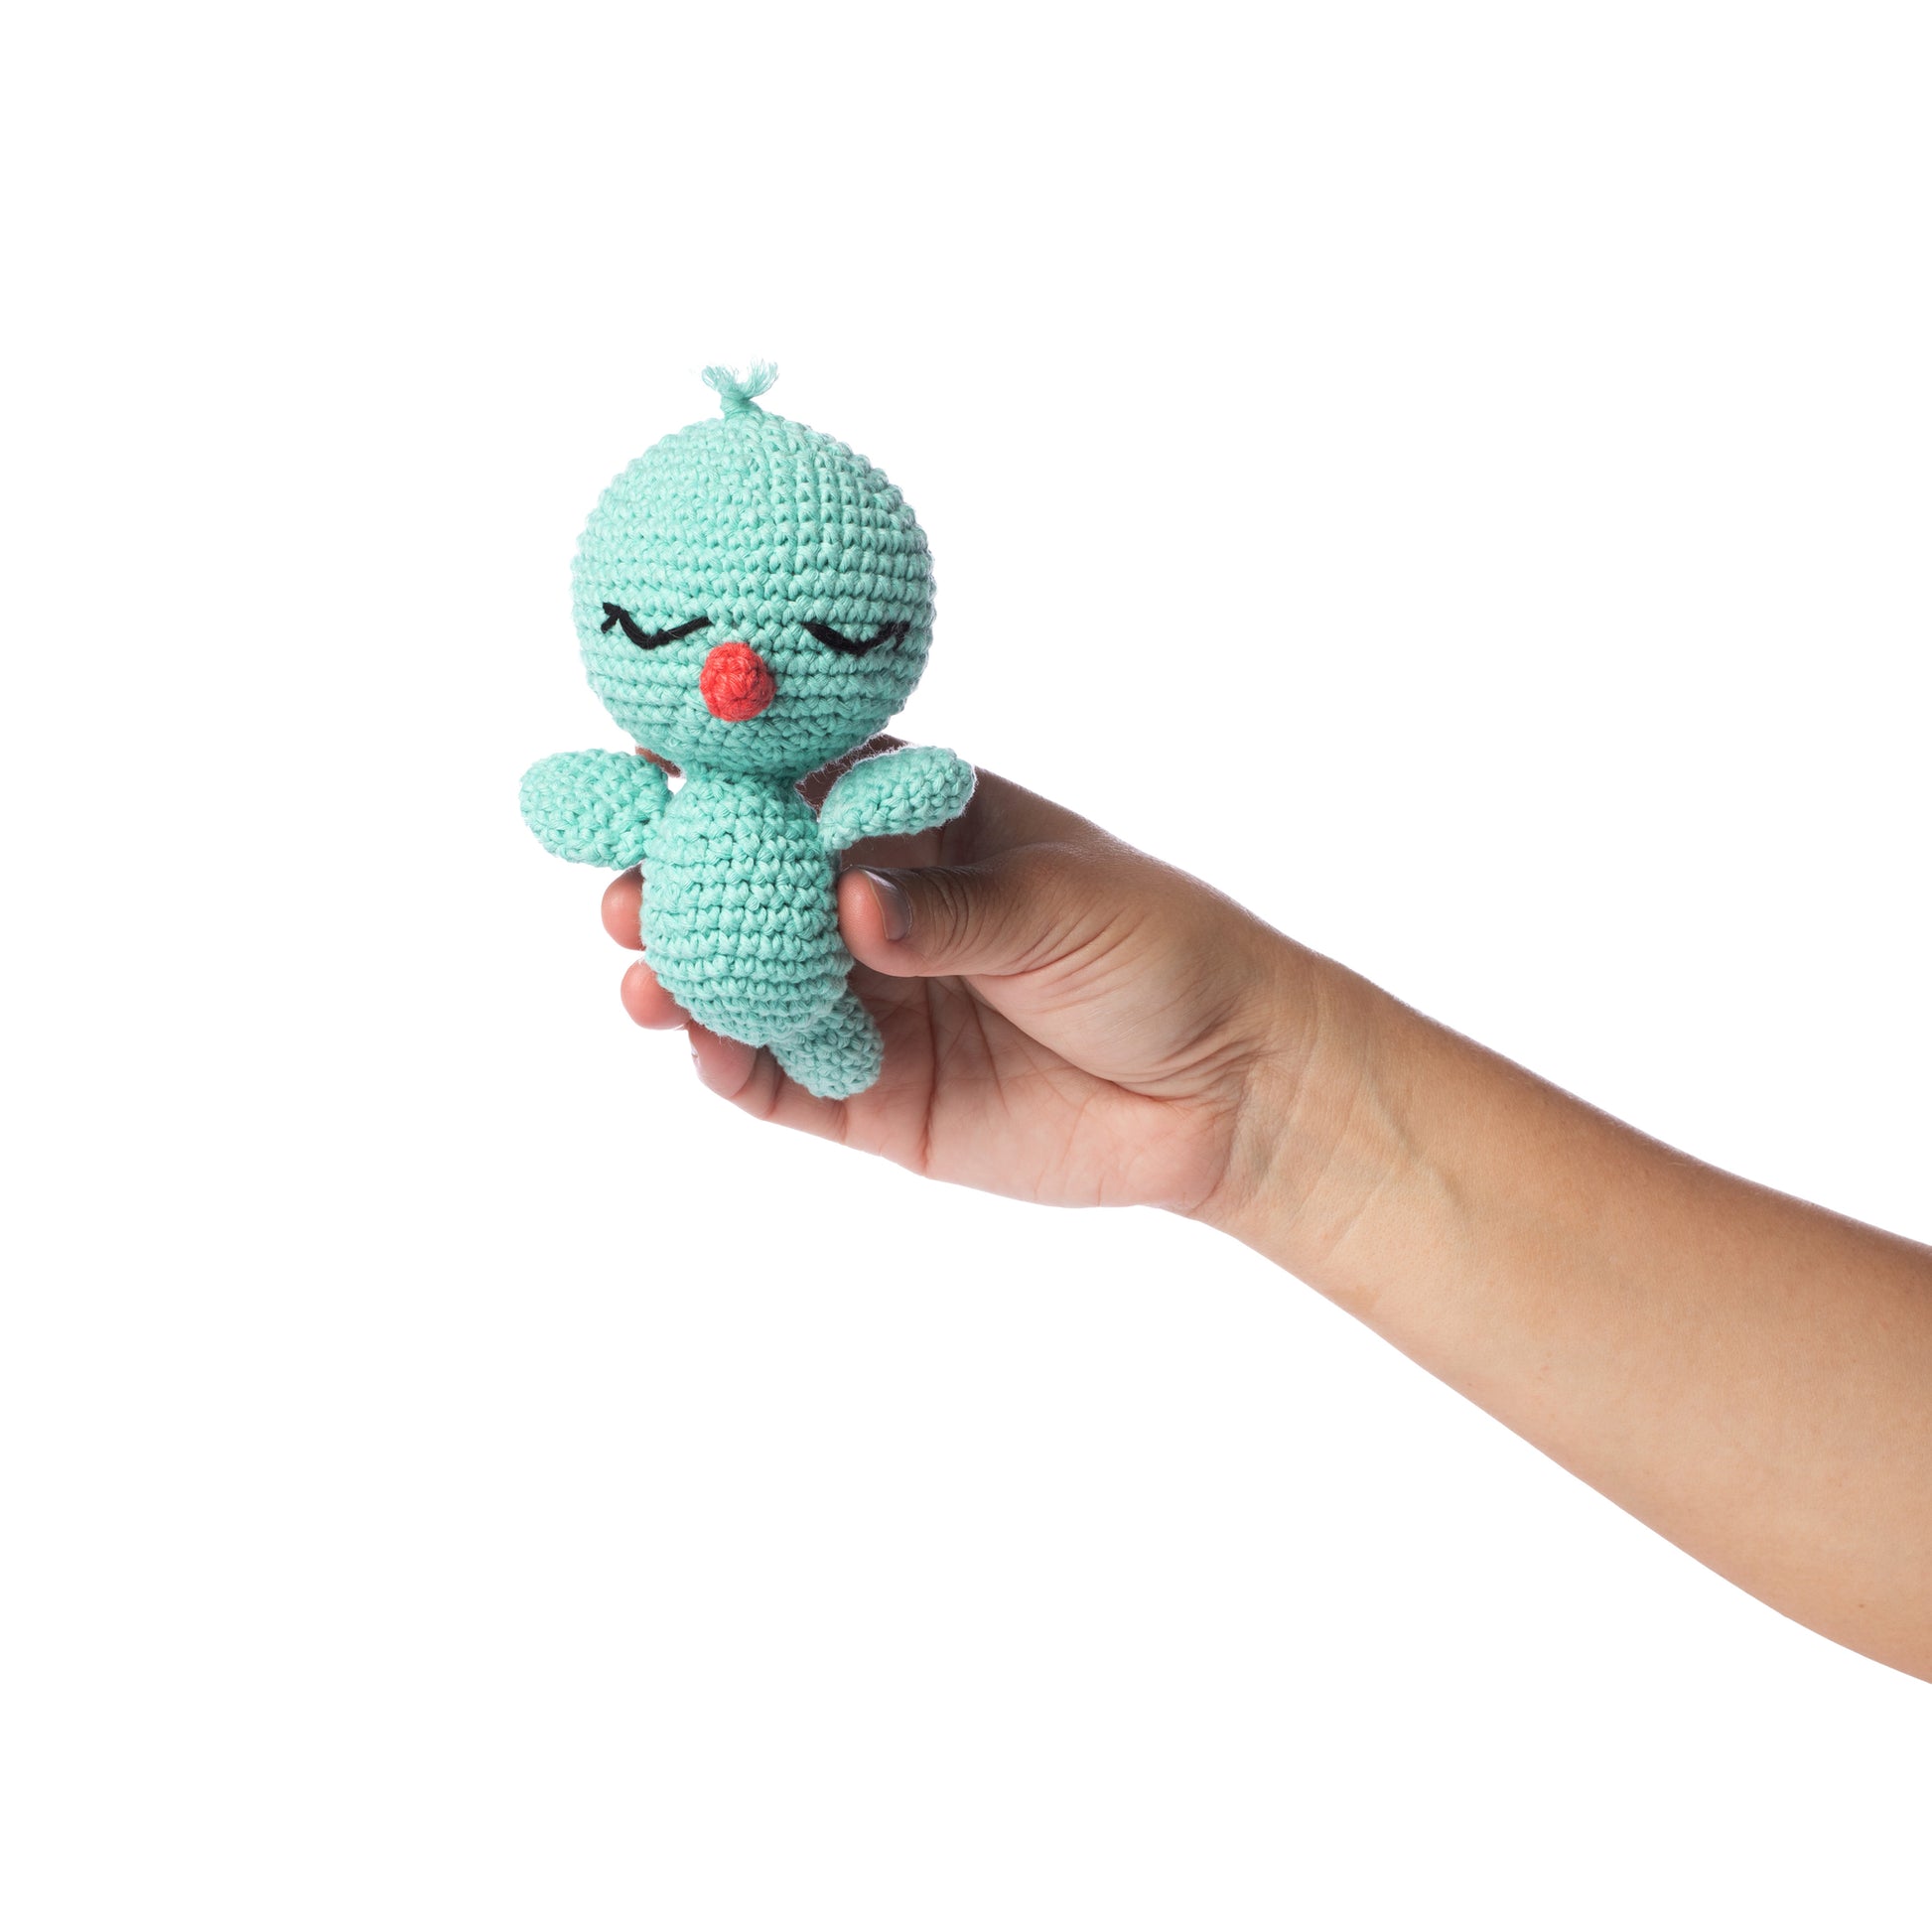 Kit Amigurumi Castor Crochet - N/A - Kiabi - 19.99€